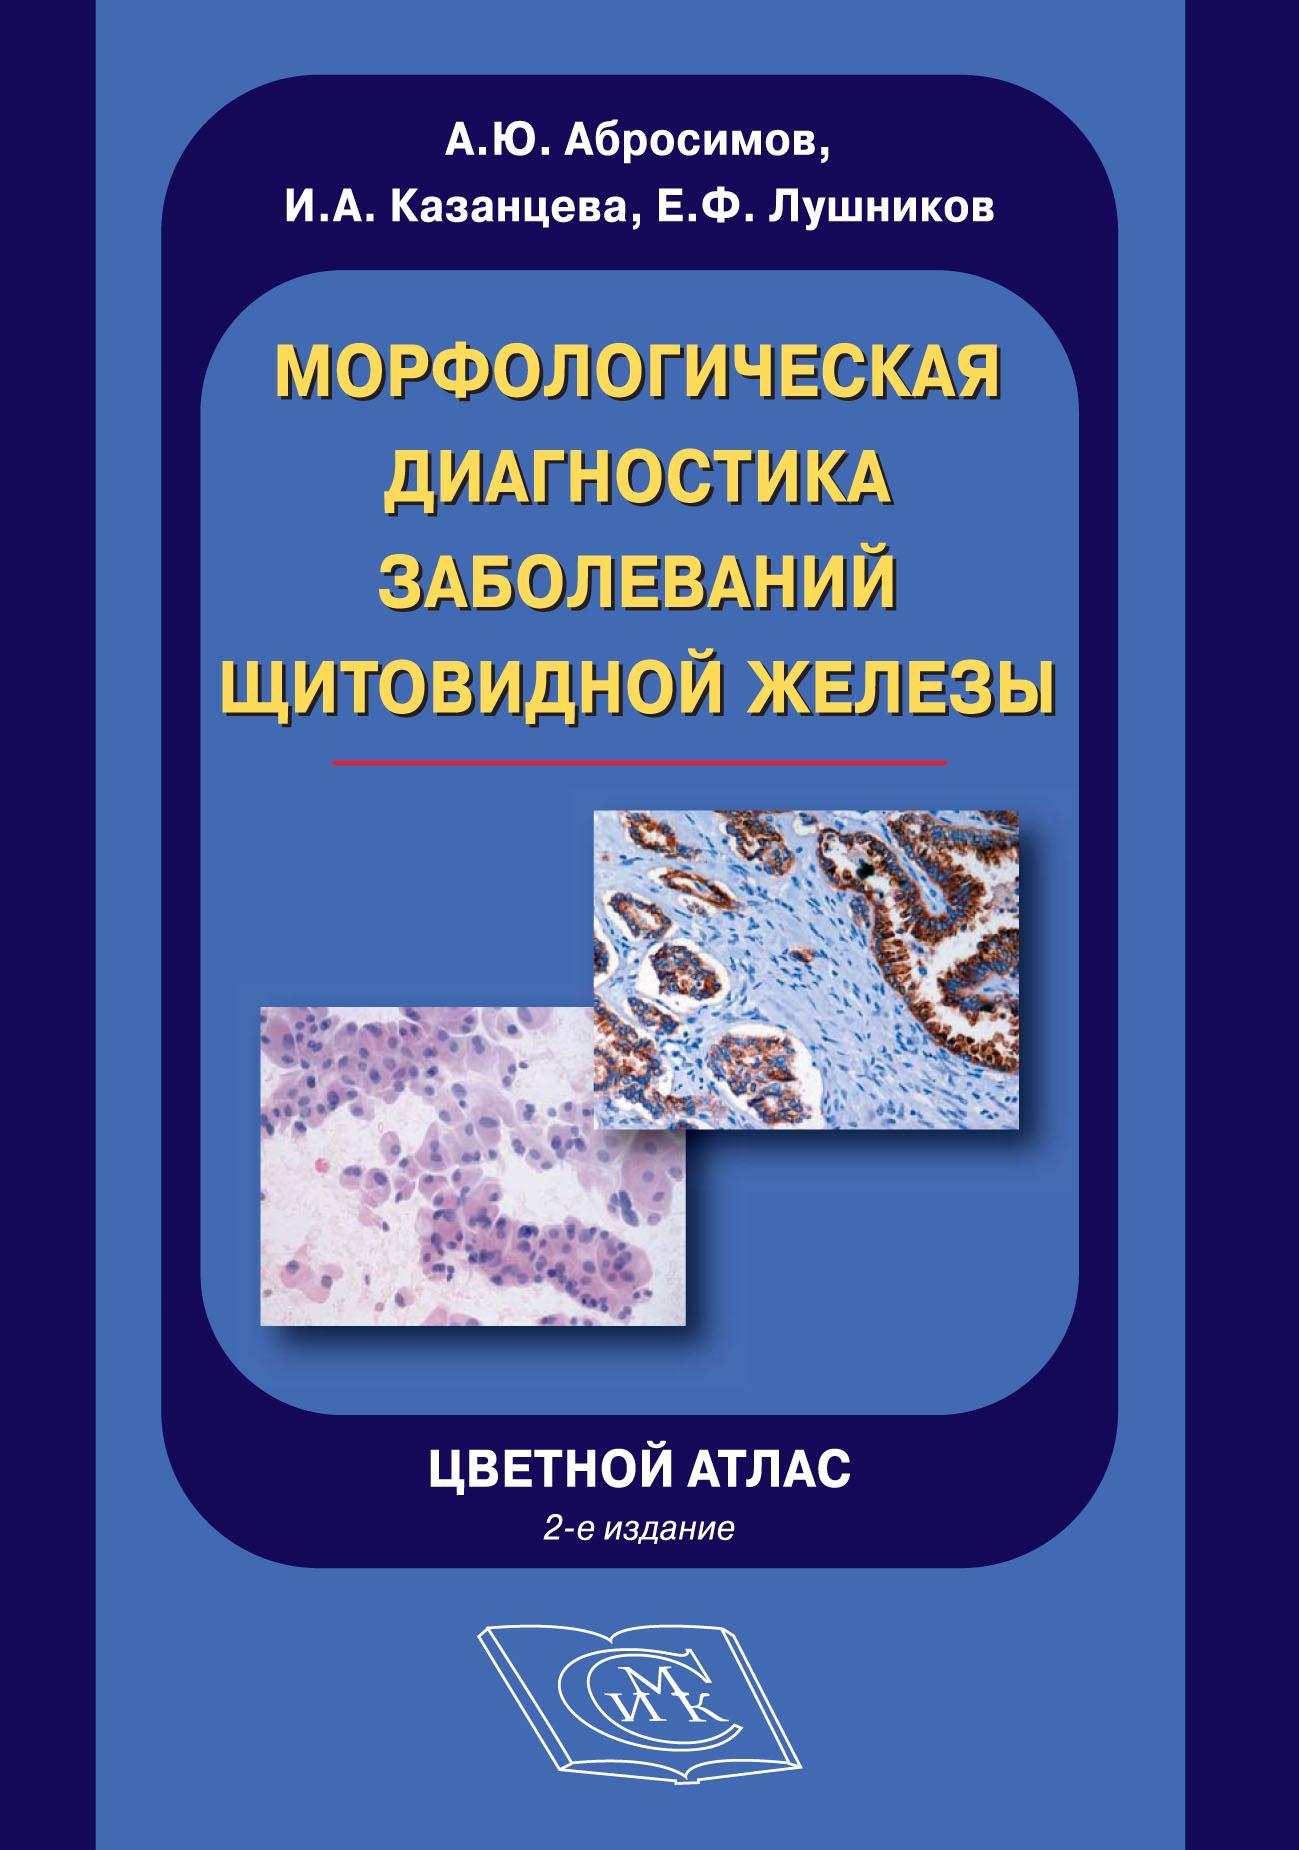 Морфологическая диагностика заболеваний щитовидной железы. Цветной атлас. 2-е издание.